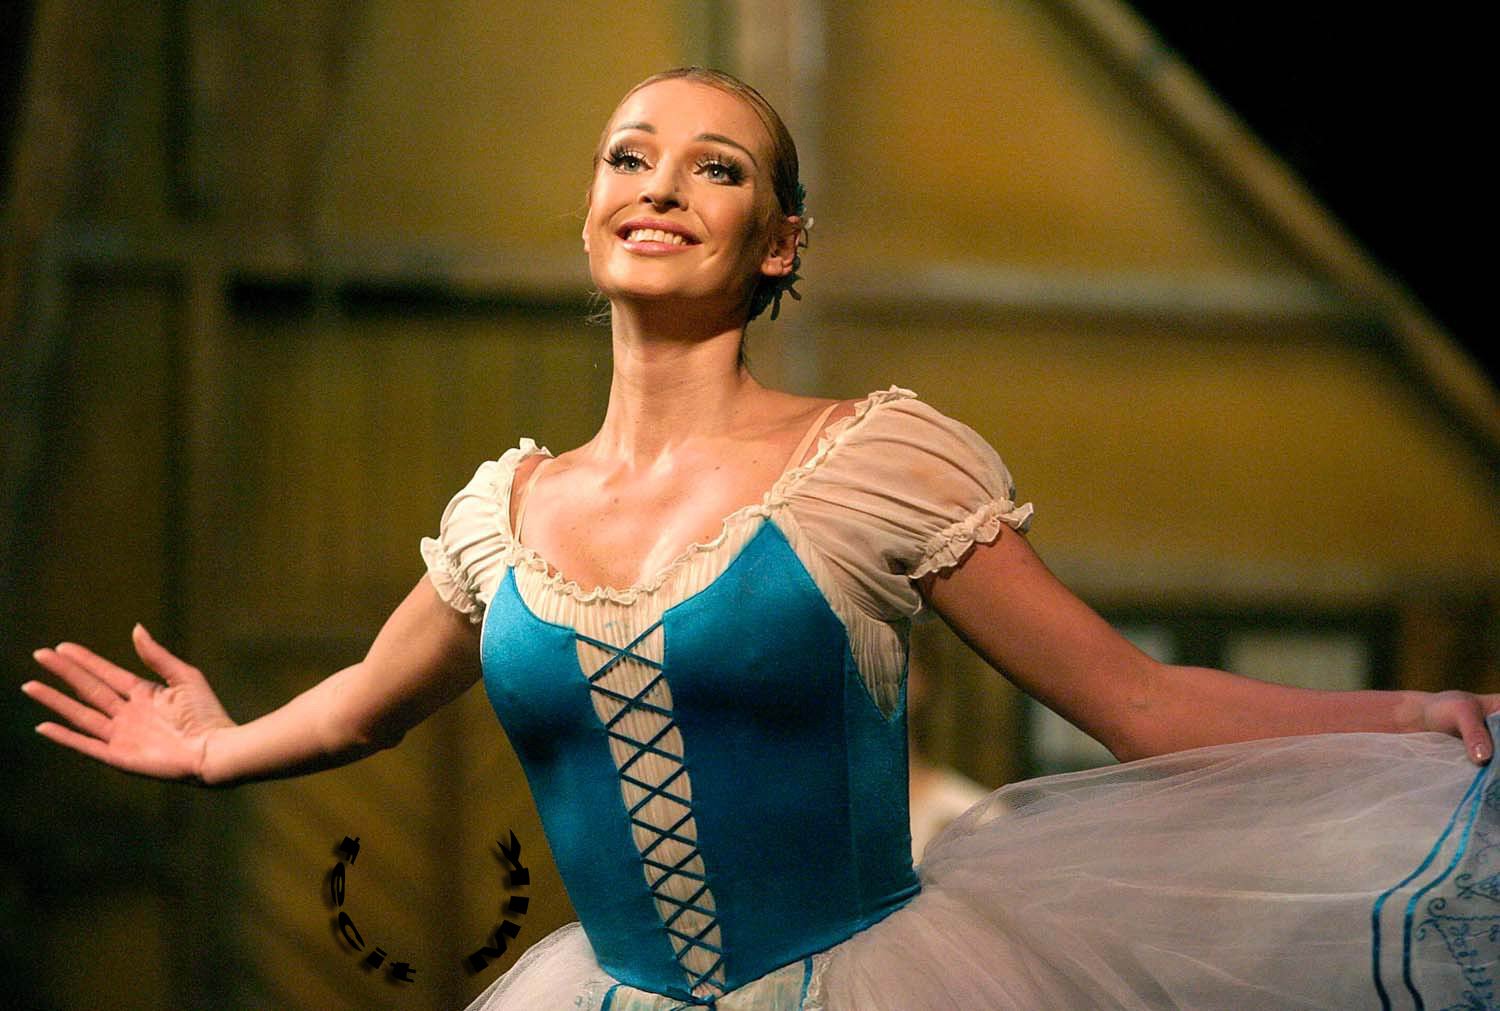 Что писали балетные критики о молодой Волочковой в начале 2000-х Волочкова, Анастасия, Волочковой, балерина, Большого, театра, когда, только, ногами, этого, танцевать, сцене, которые, партию, балерины, вполне, балерине, топот, номинации, фуэте